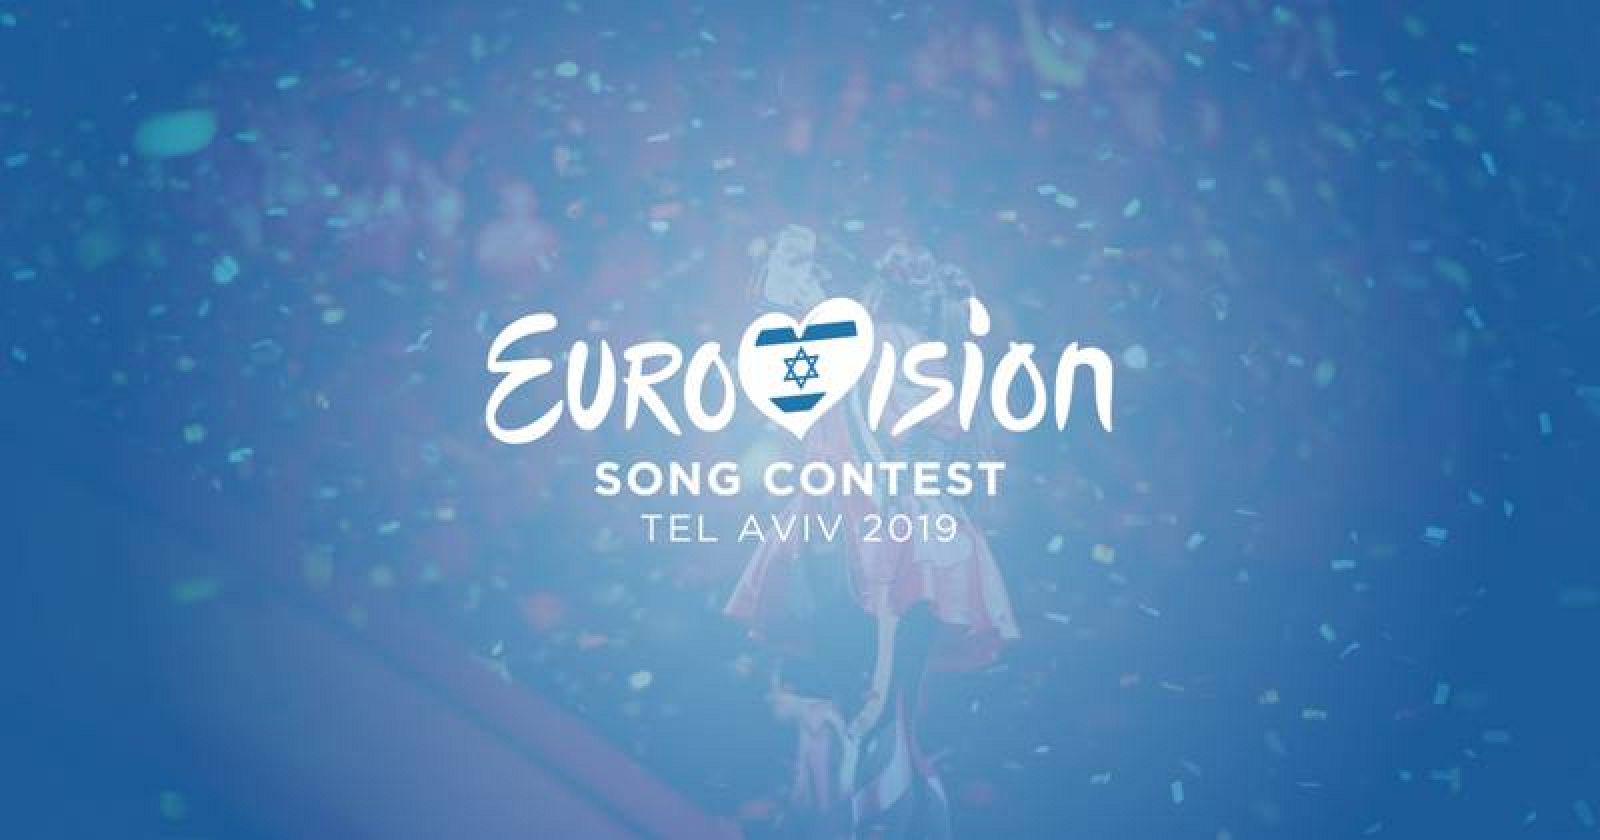 Tel Aviv acogerá el Festival de Eurovisión 2019 el 18 mayo